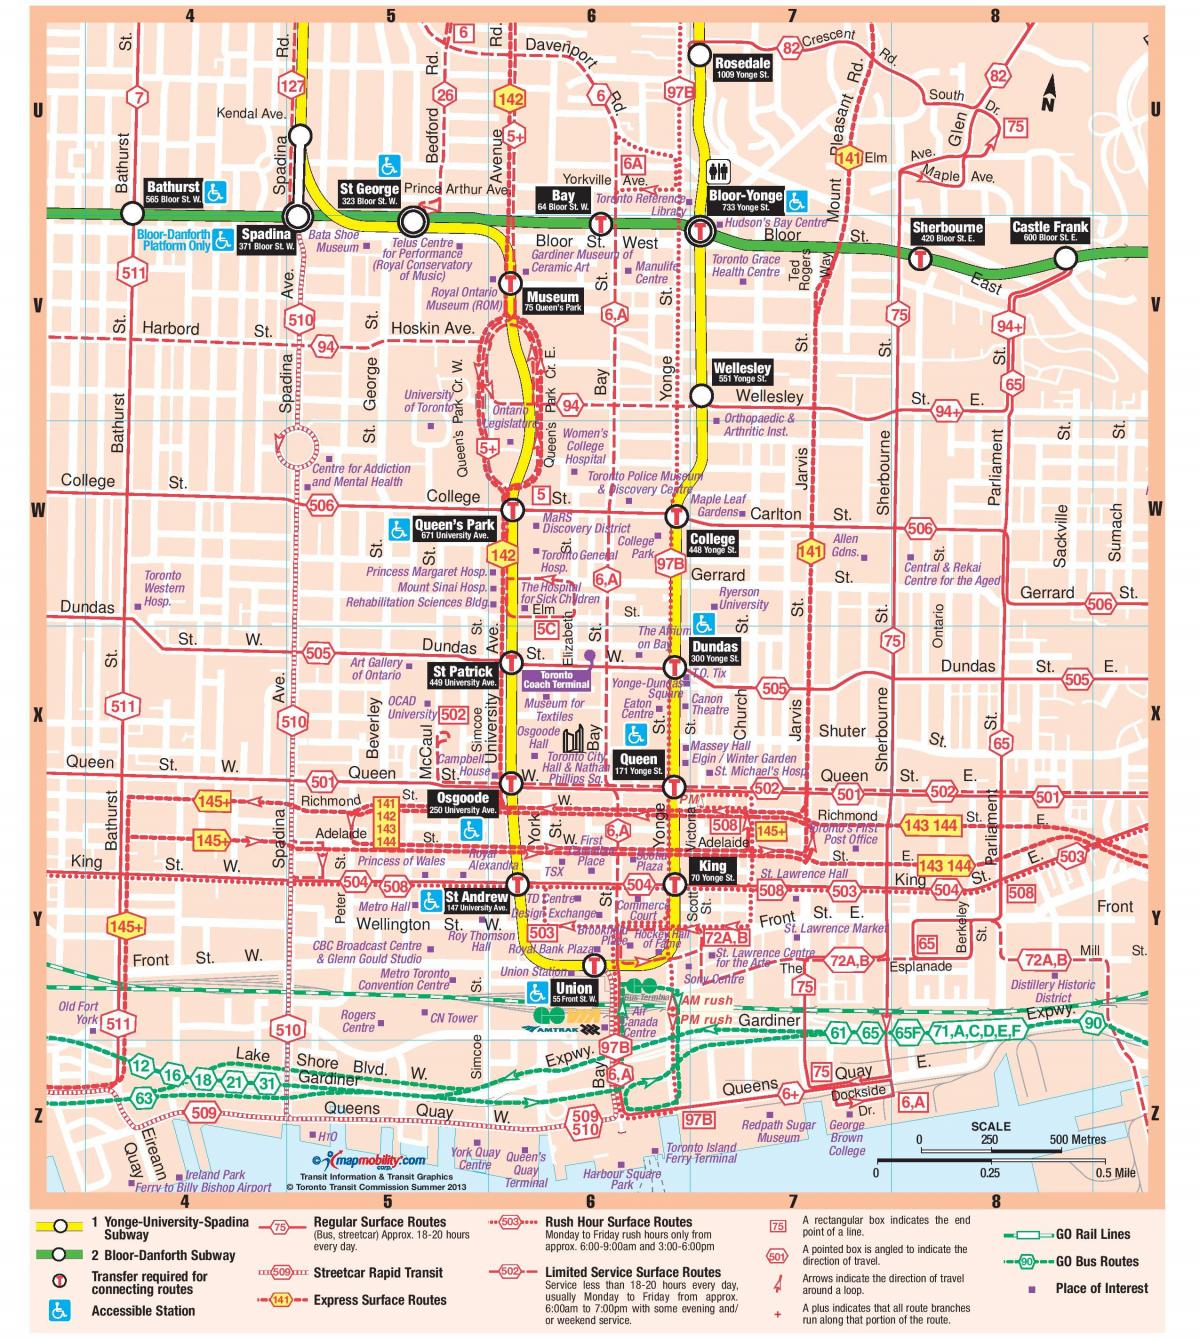 के नक्शे, मेट्रो स्टेशन, शहर टोरंटो